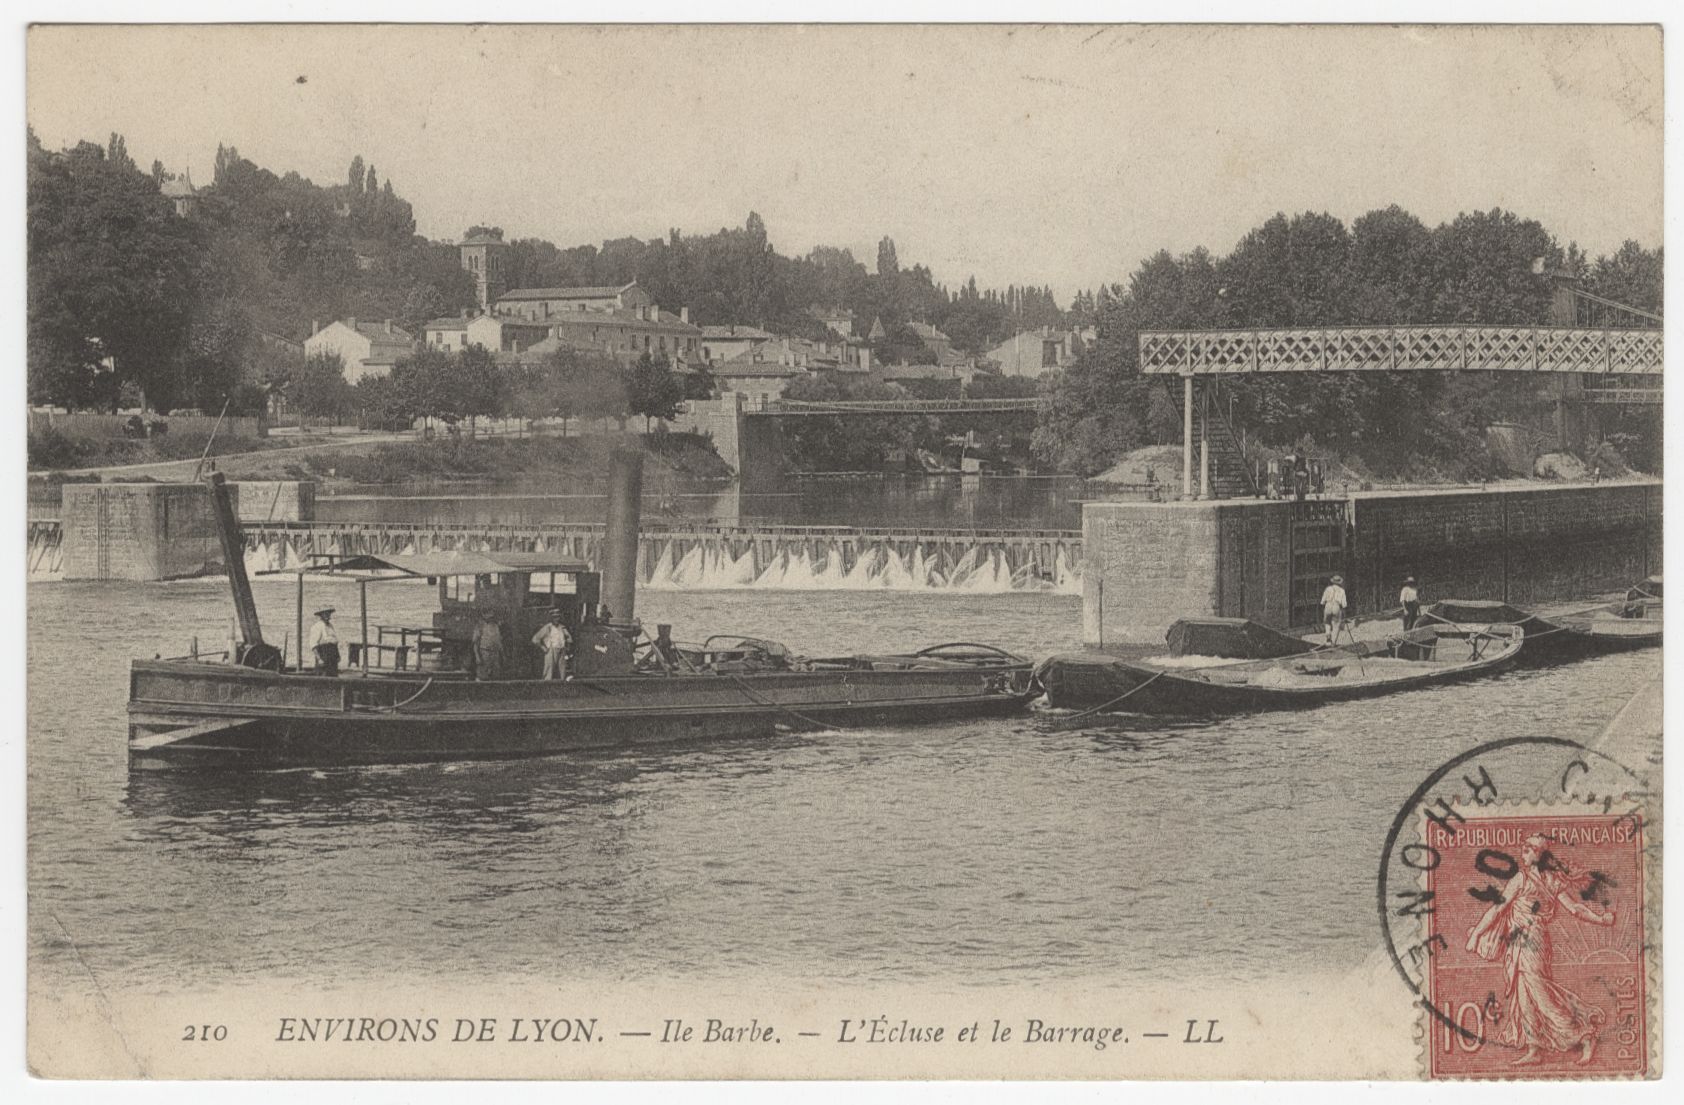 Environs de Lyon - Ile Barbe. L'écluse et le barrage : carte postale (vers 1901, cote : 4FI/3375)